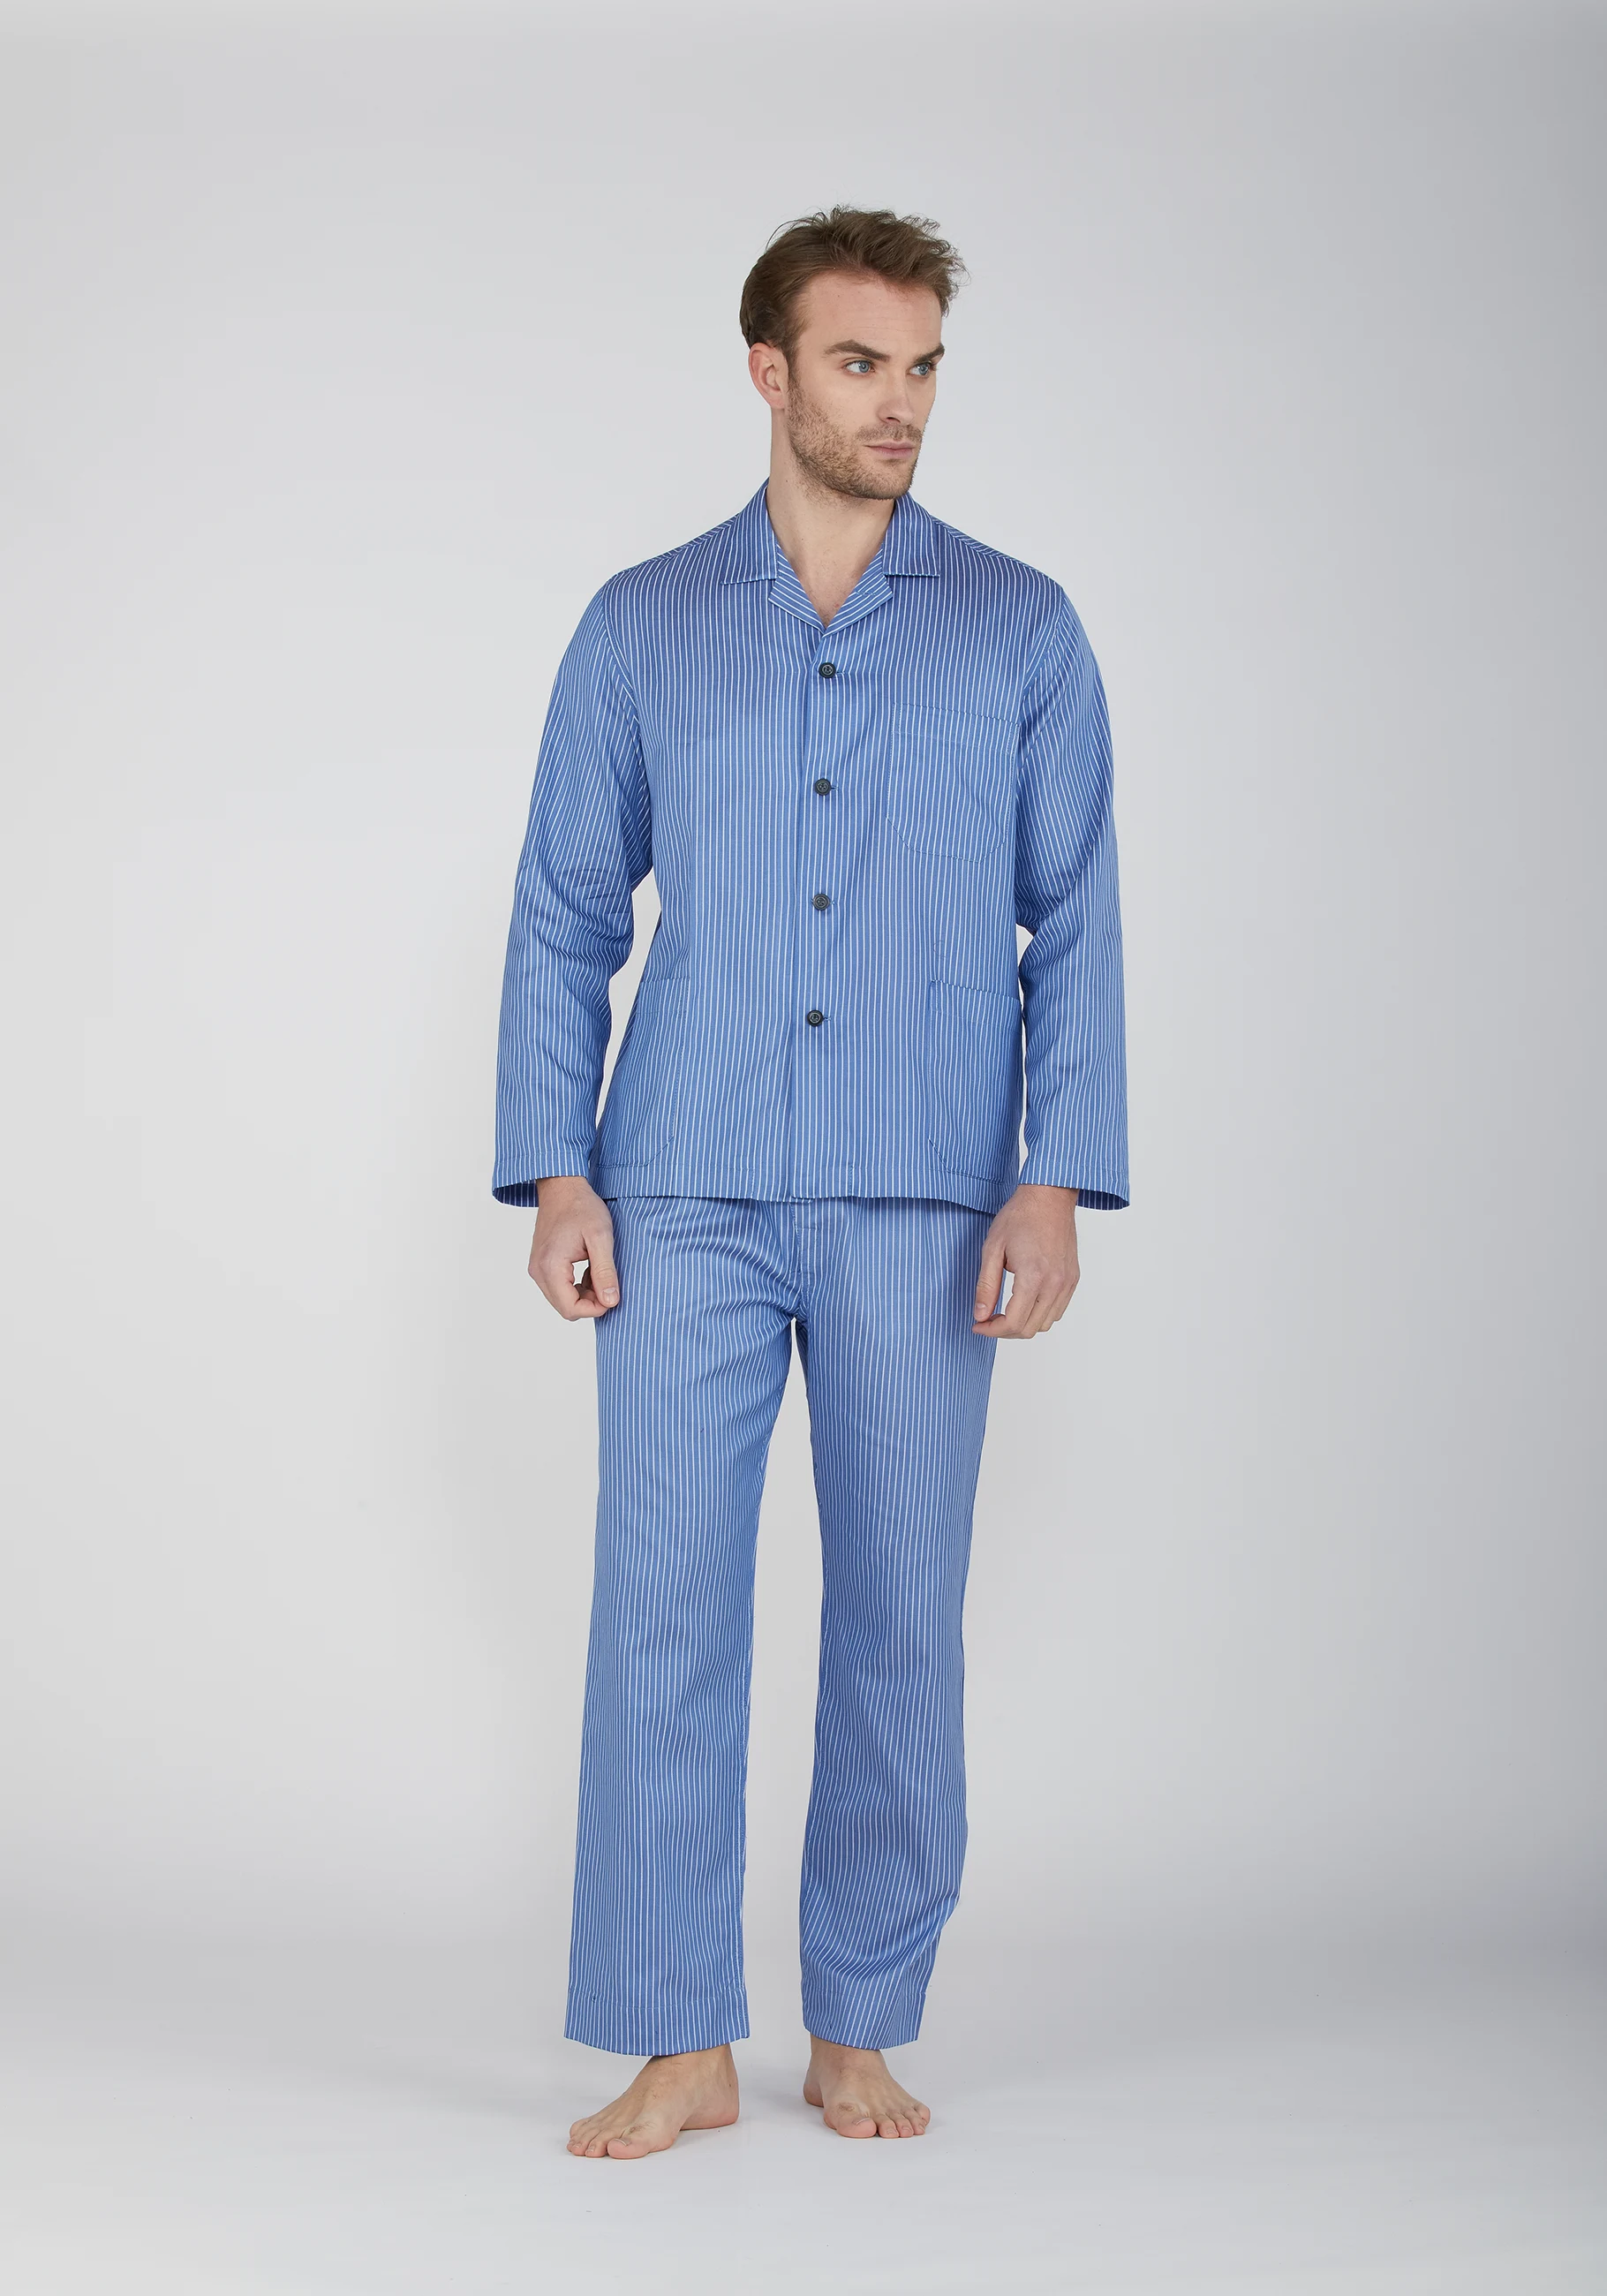 BipBip pigiama uomo in cotone riga raso tinto in filo con collo a camicia e bottoni